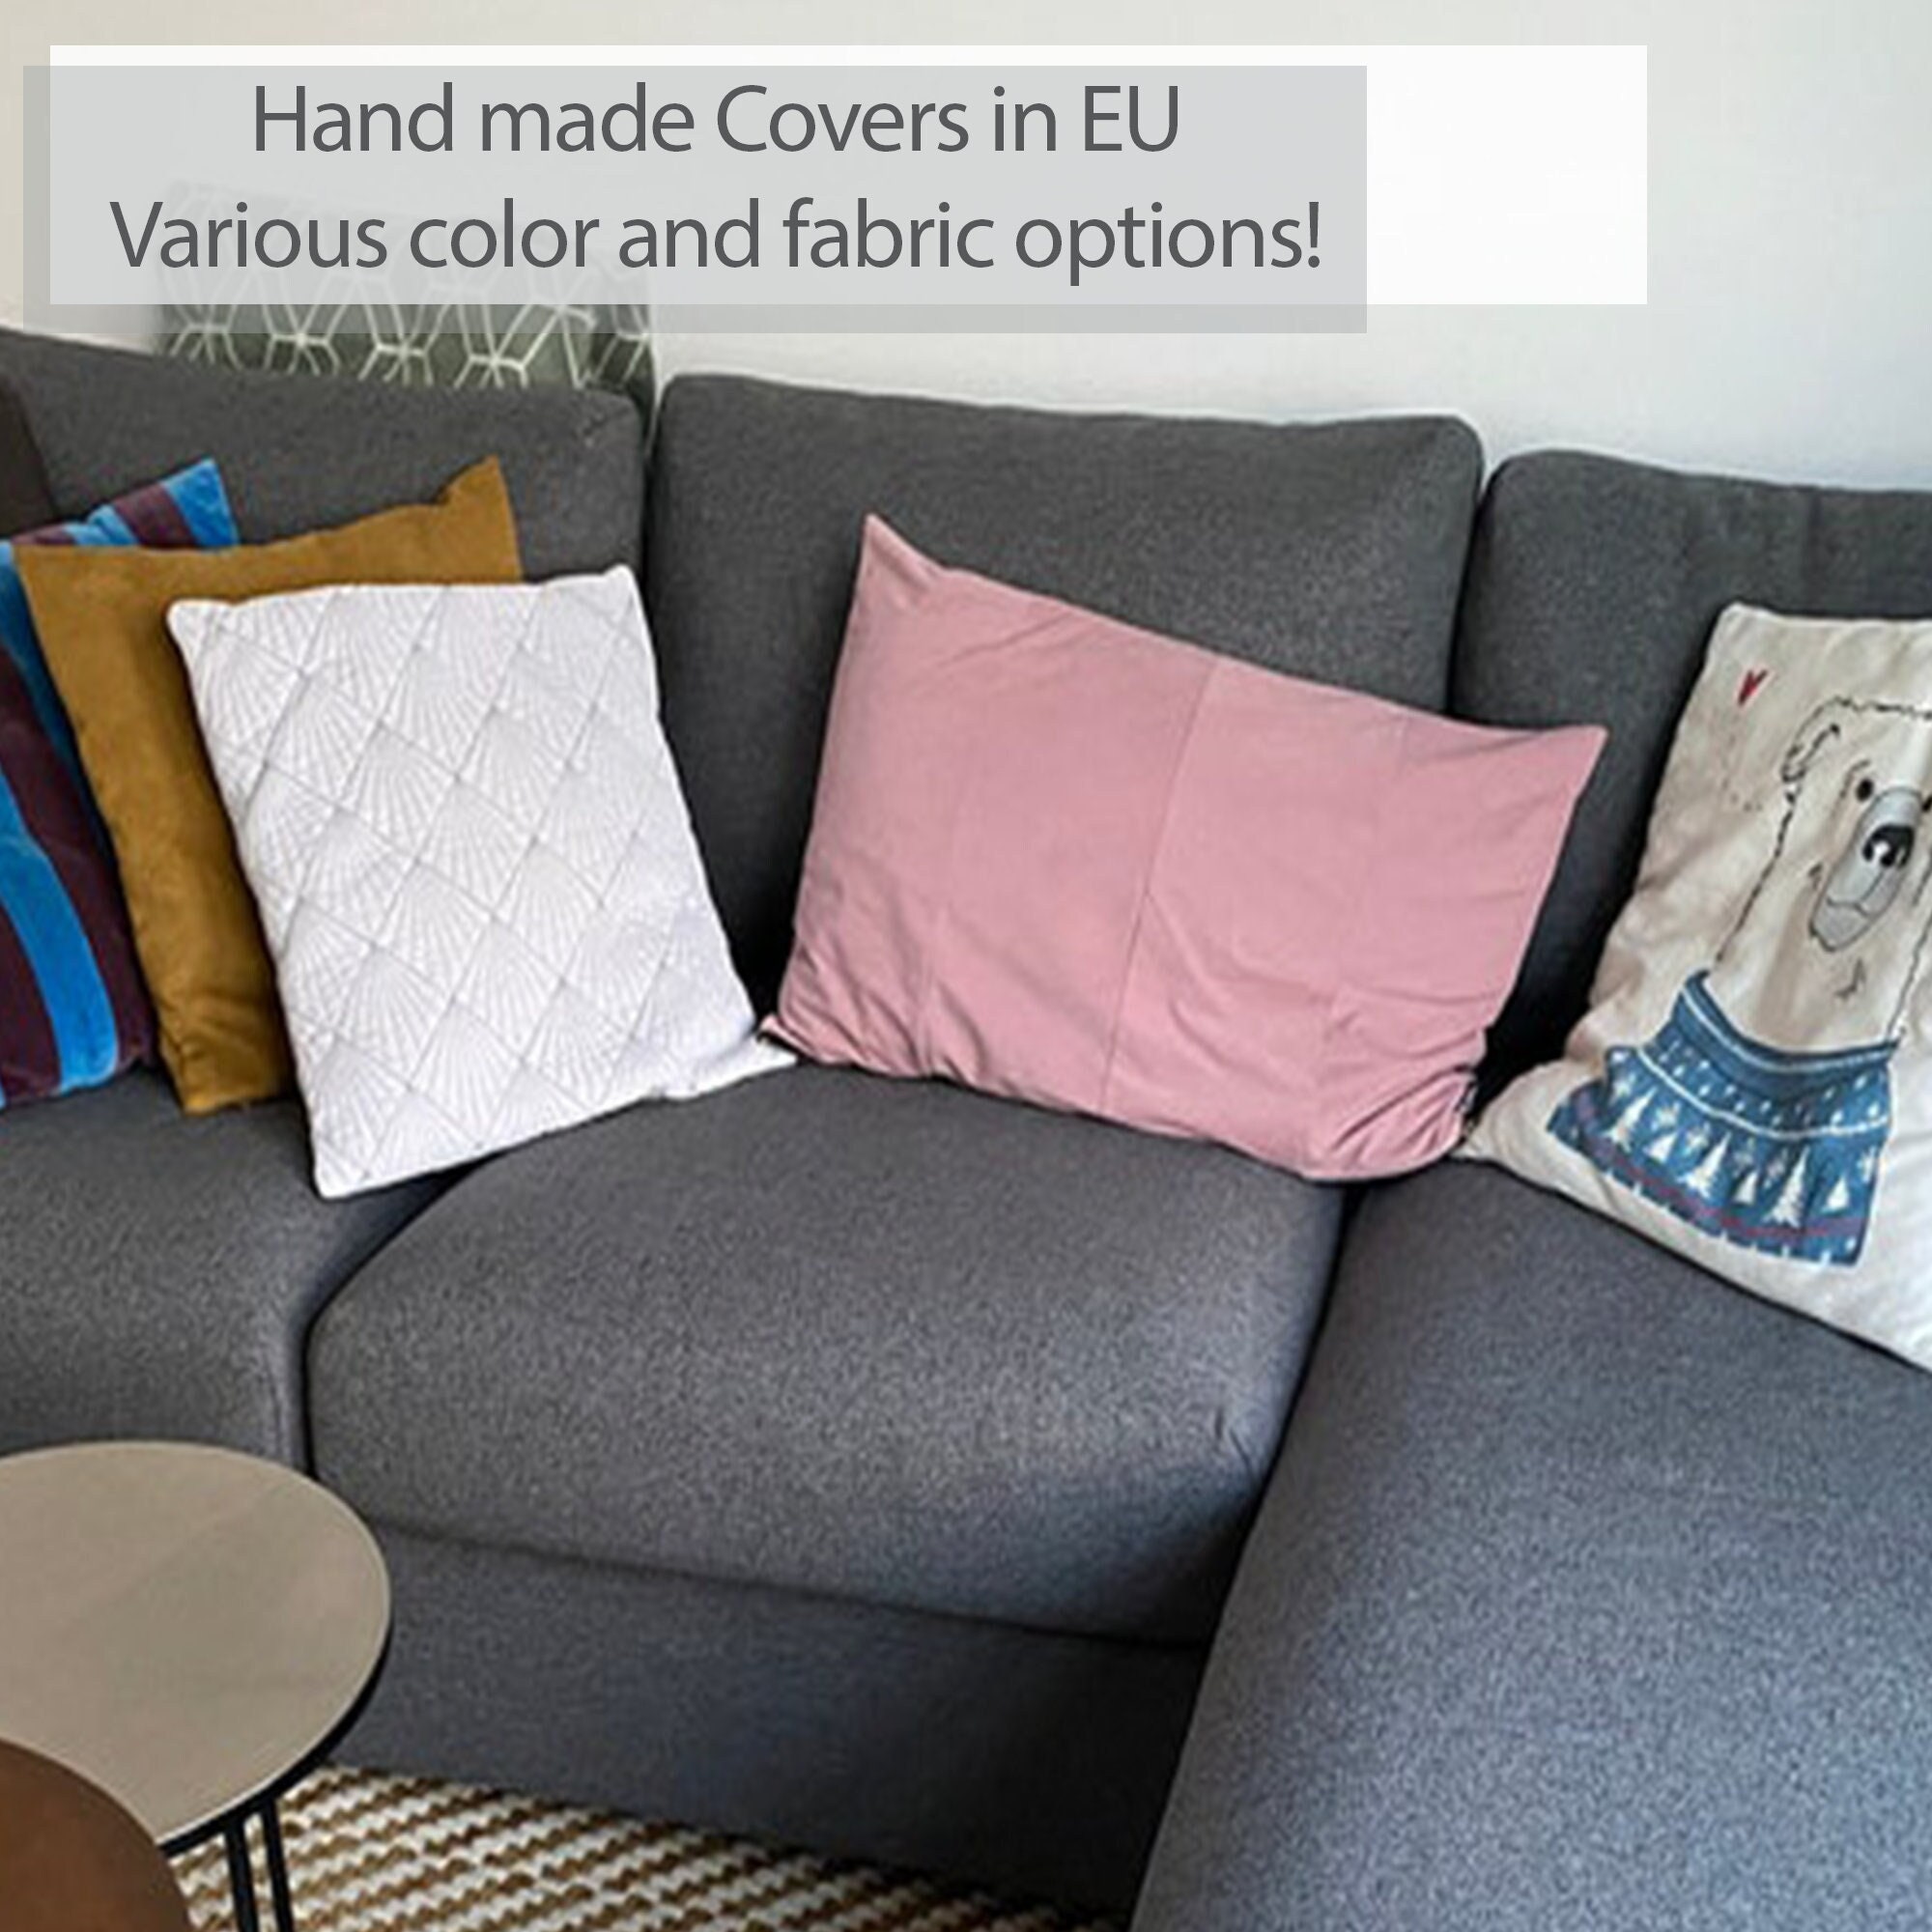 VIMLE 3er-Sofa mit Récamiere, Mit Nackenkissen mit breiten  Armlehnen/Gunnared mittelgrau - IKEA Schweiz